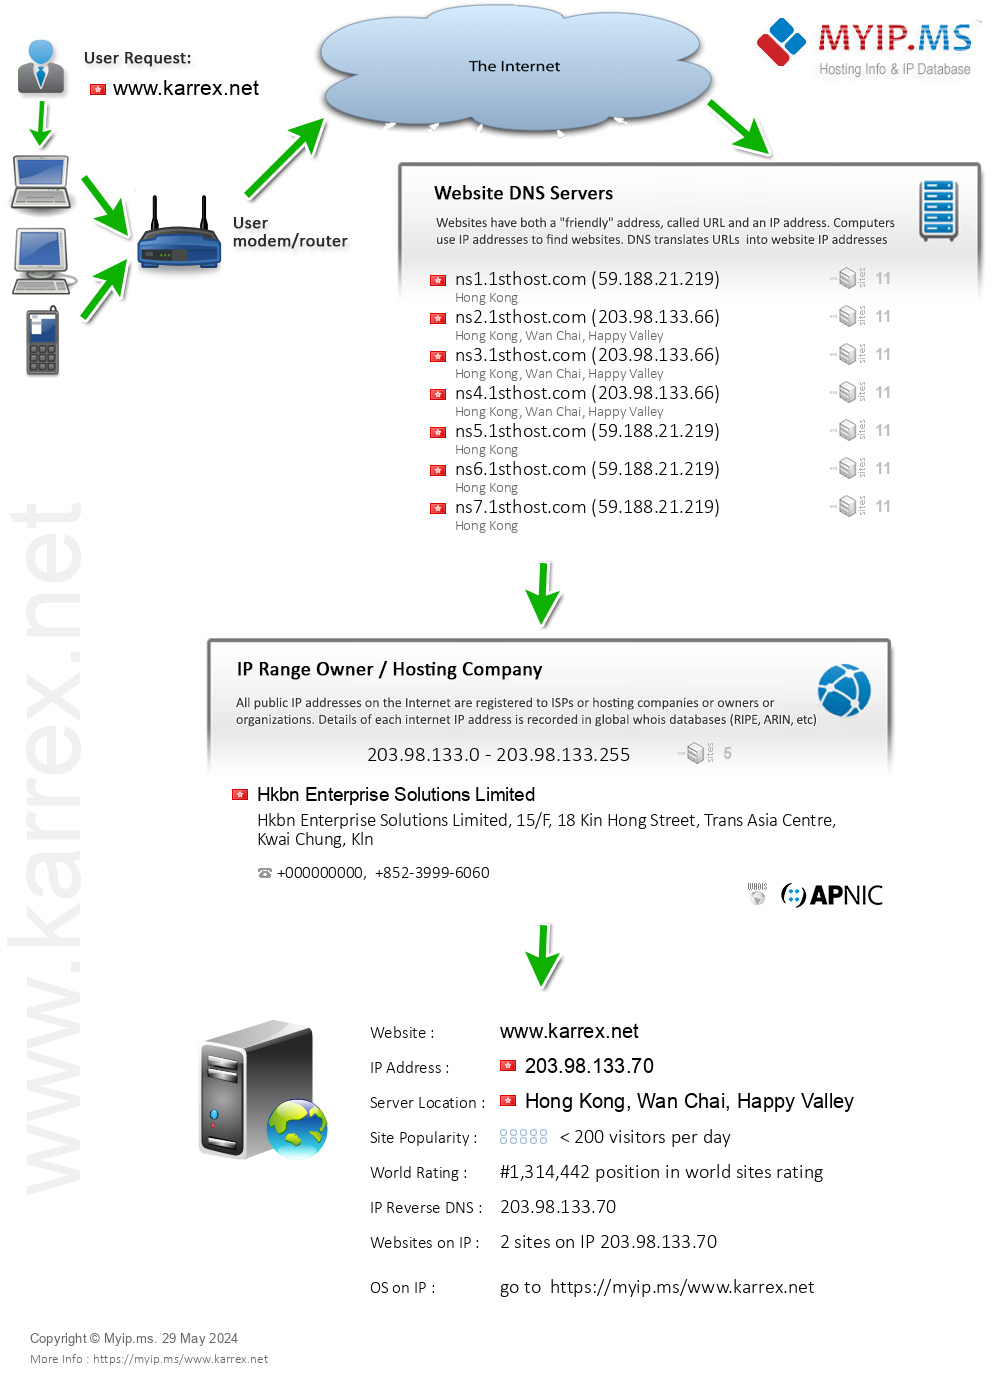 Karrex.net - Website Hosting Visual IP Diagram